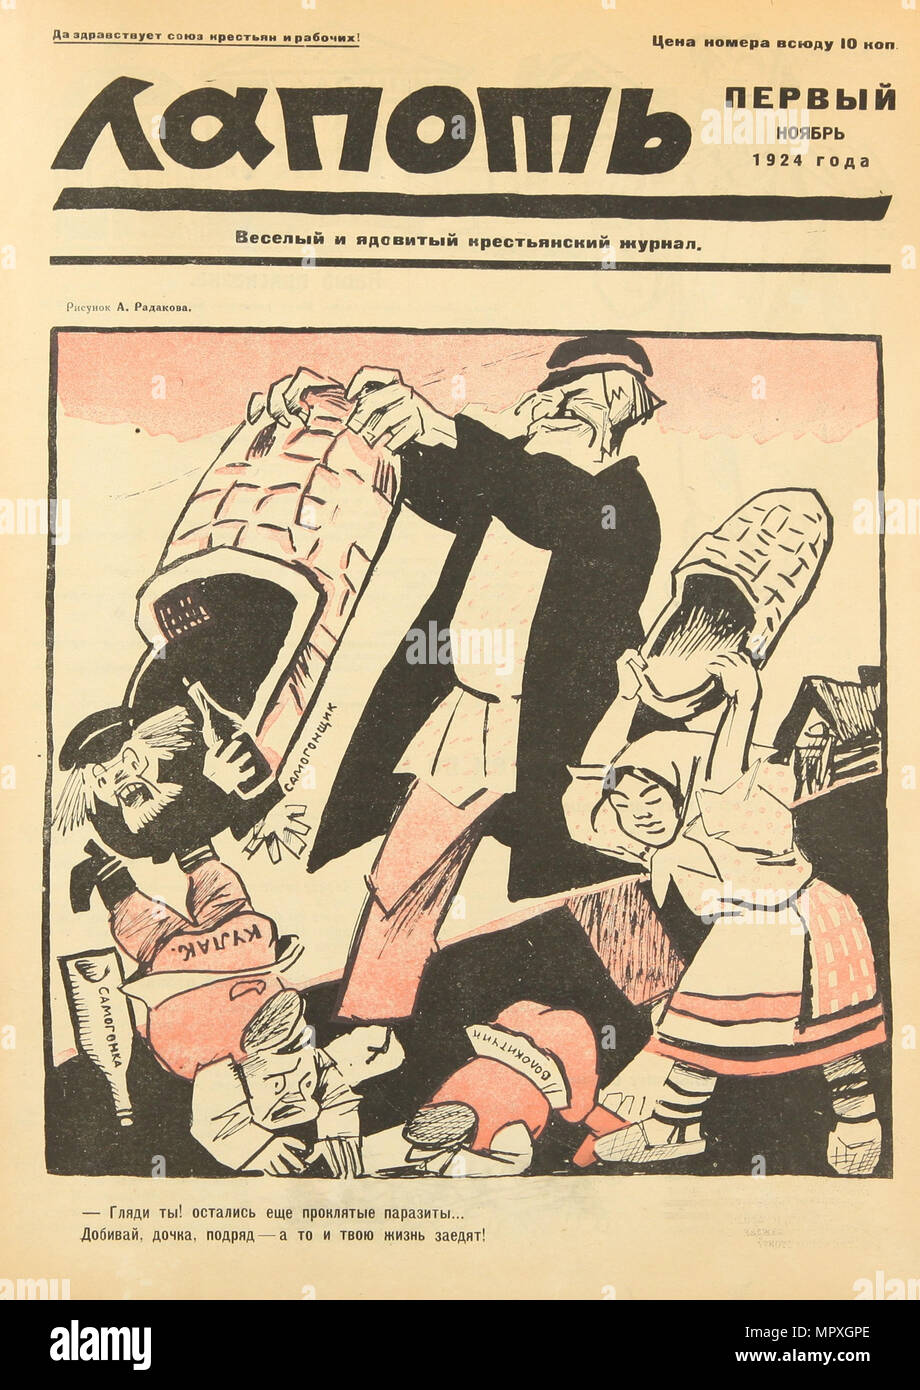 Nieder mit der Verdammten Parasiten! Abdeckung des Lapot satirische Zeitschrift, 1924. Stockfoto